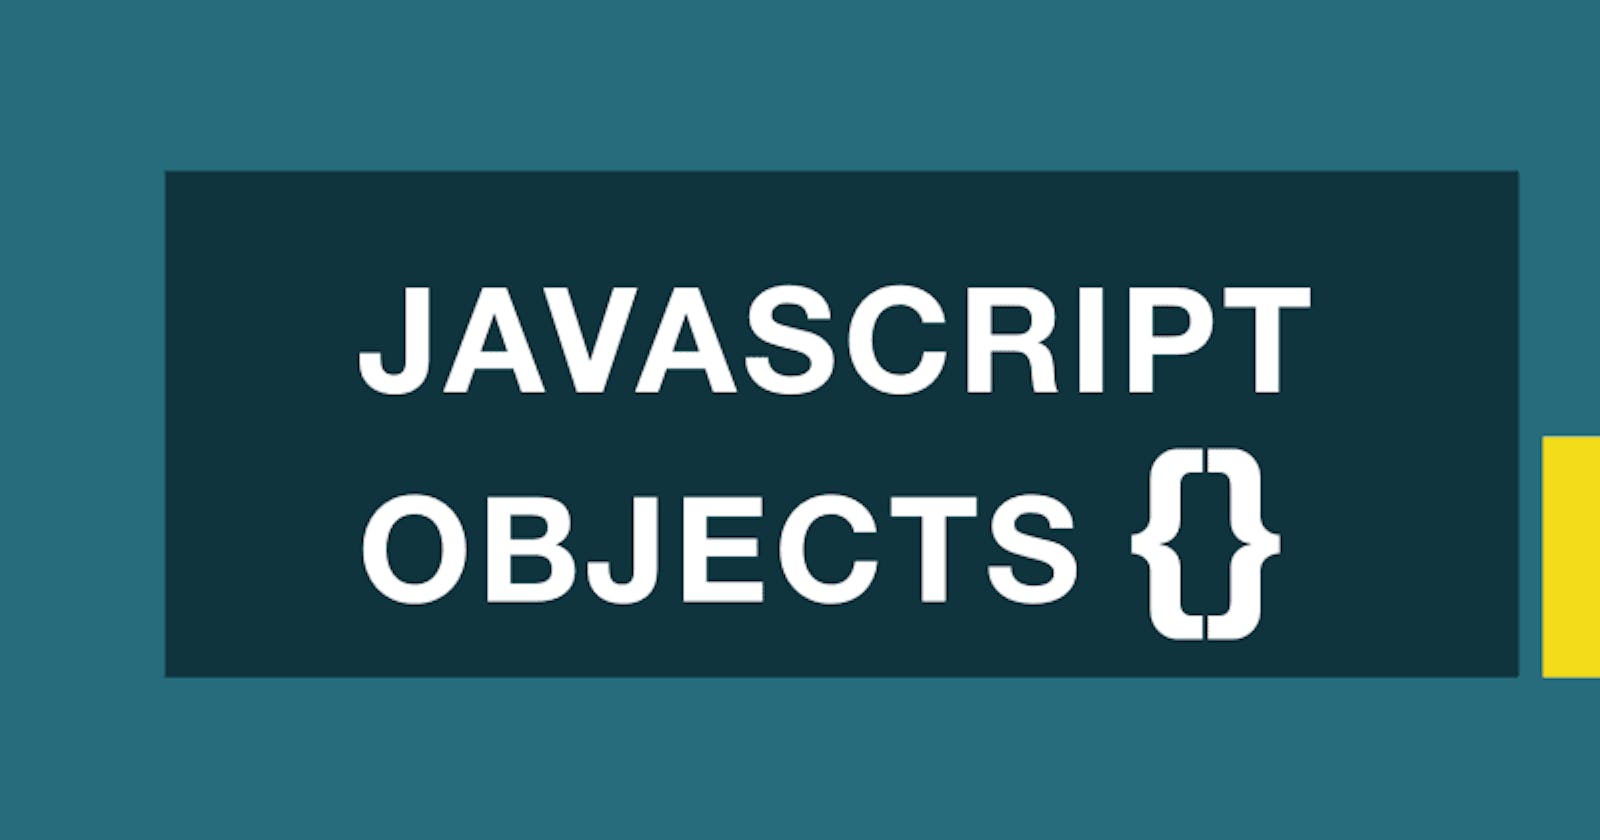 The Big 'O' of Javascript